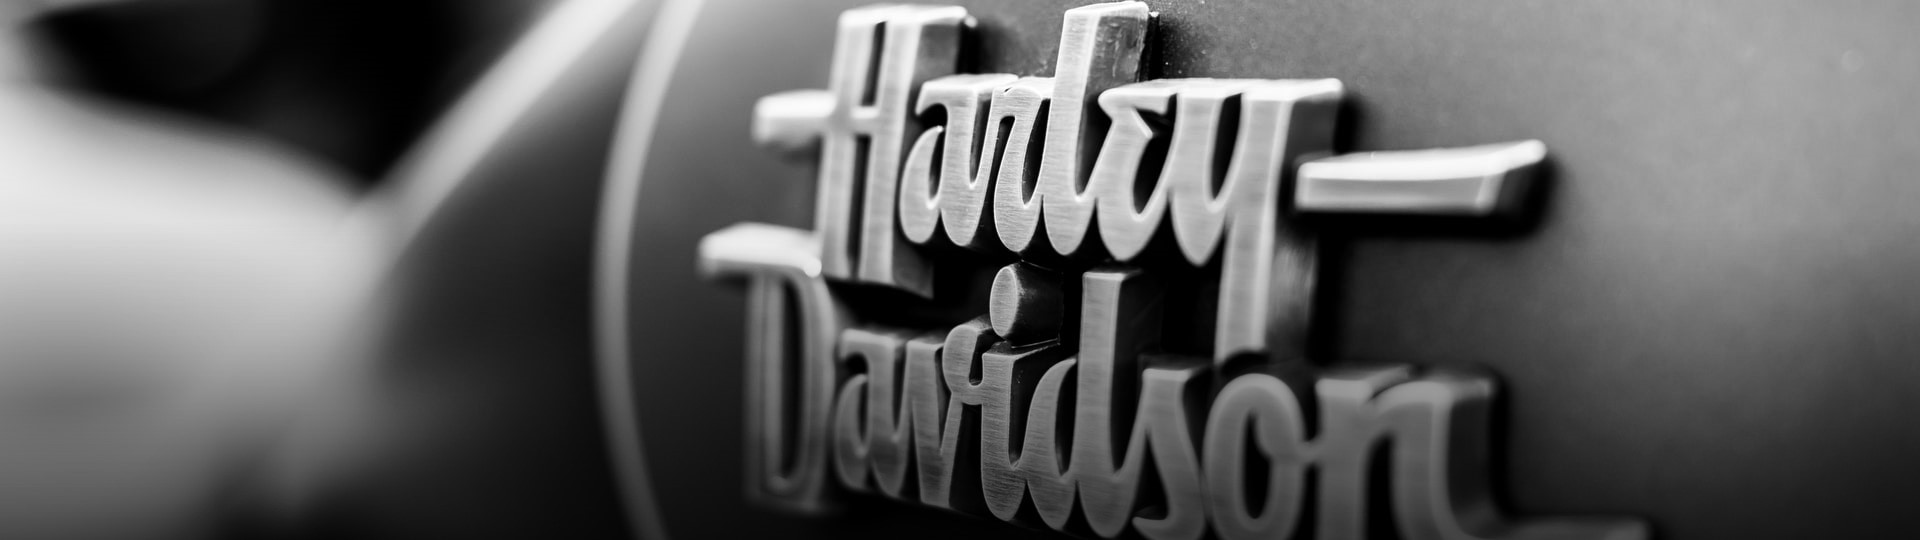 Harley-Davidson je díky novému plánu restrukturalizace zpět v zisku